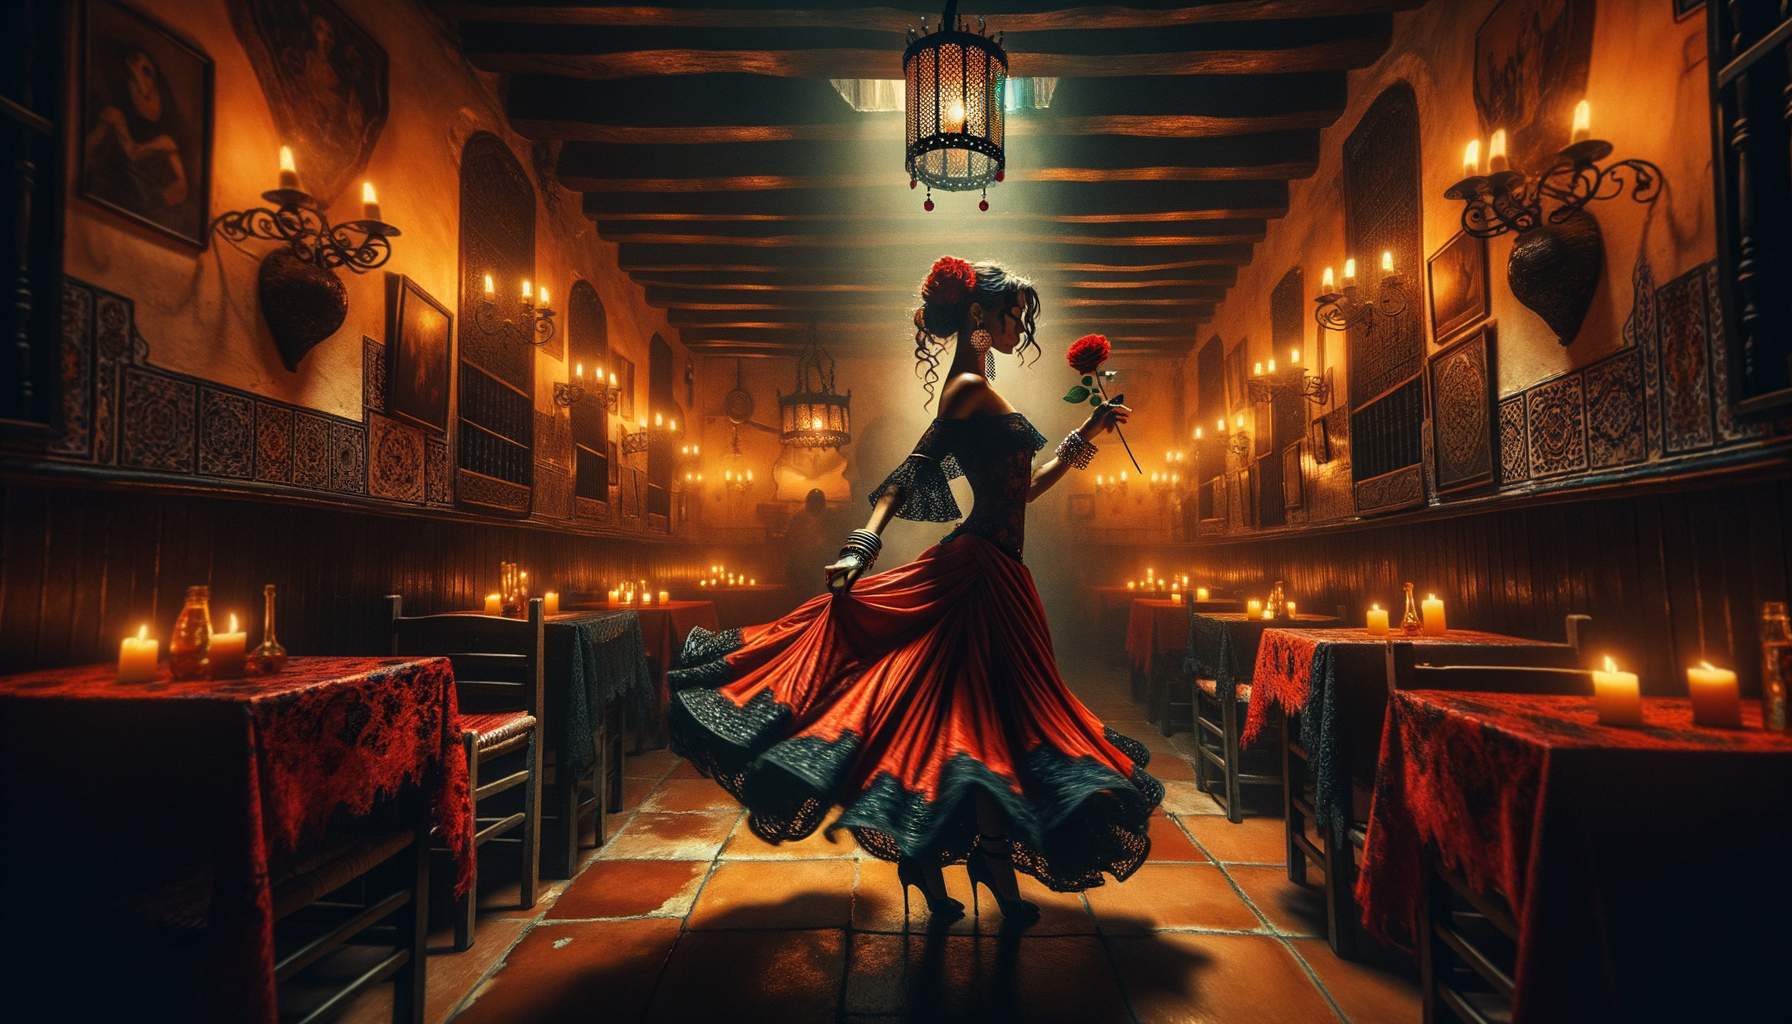 flamenco lyrics generator